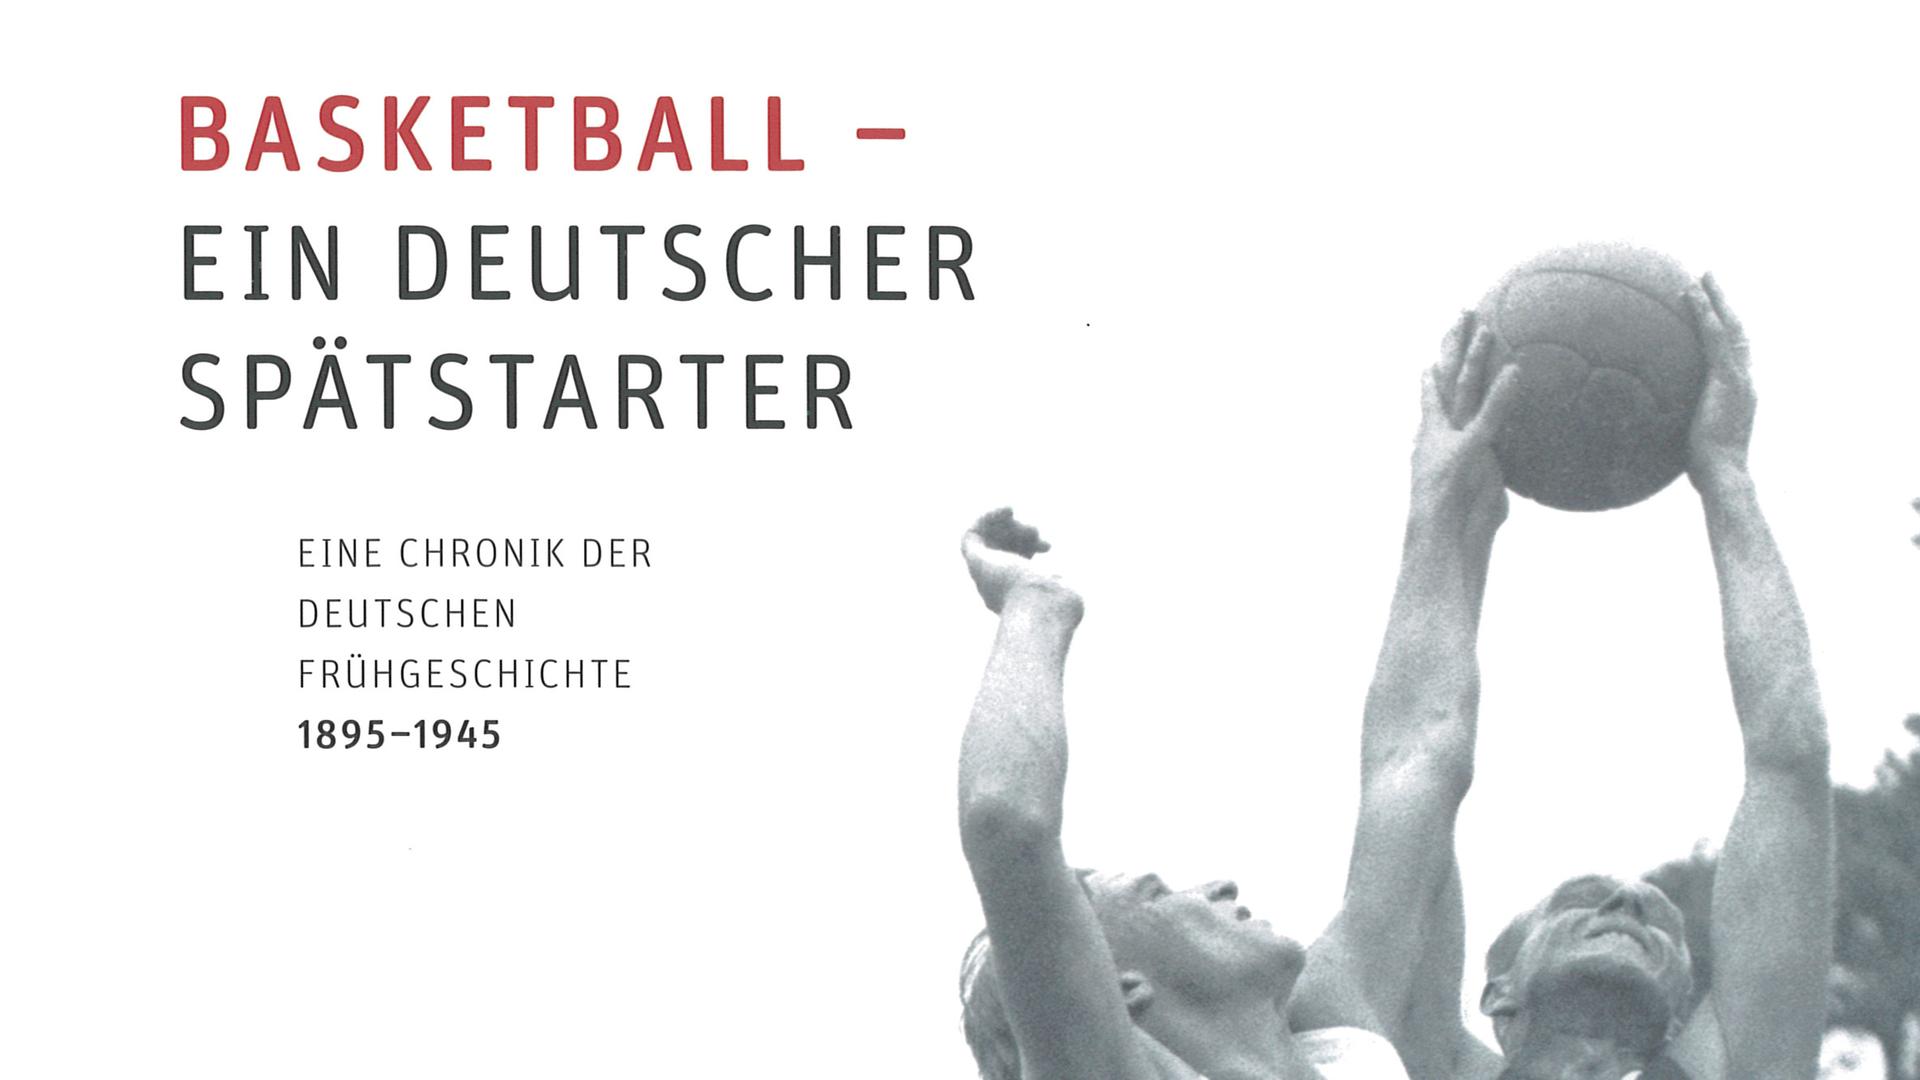 Buchcover: "Basketball - Ein deutscher Spätstarter"